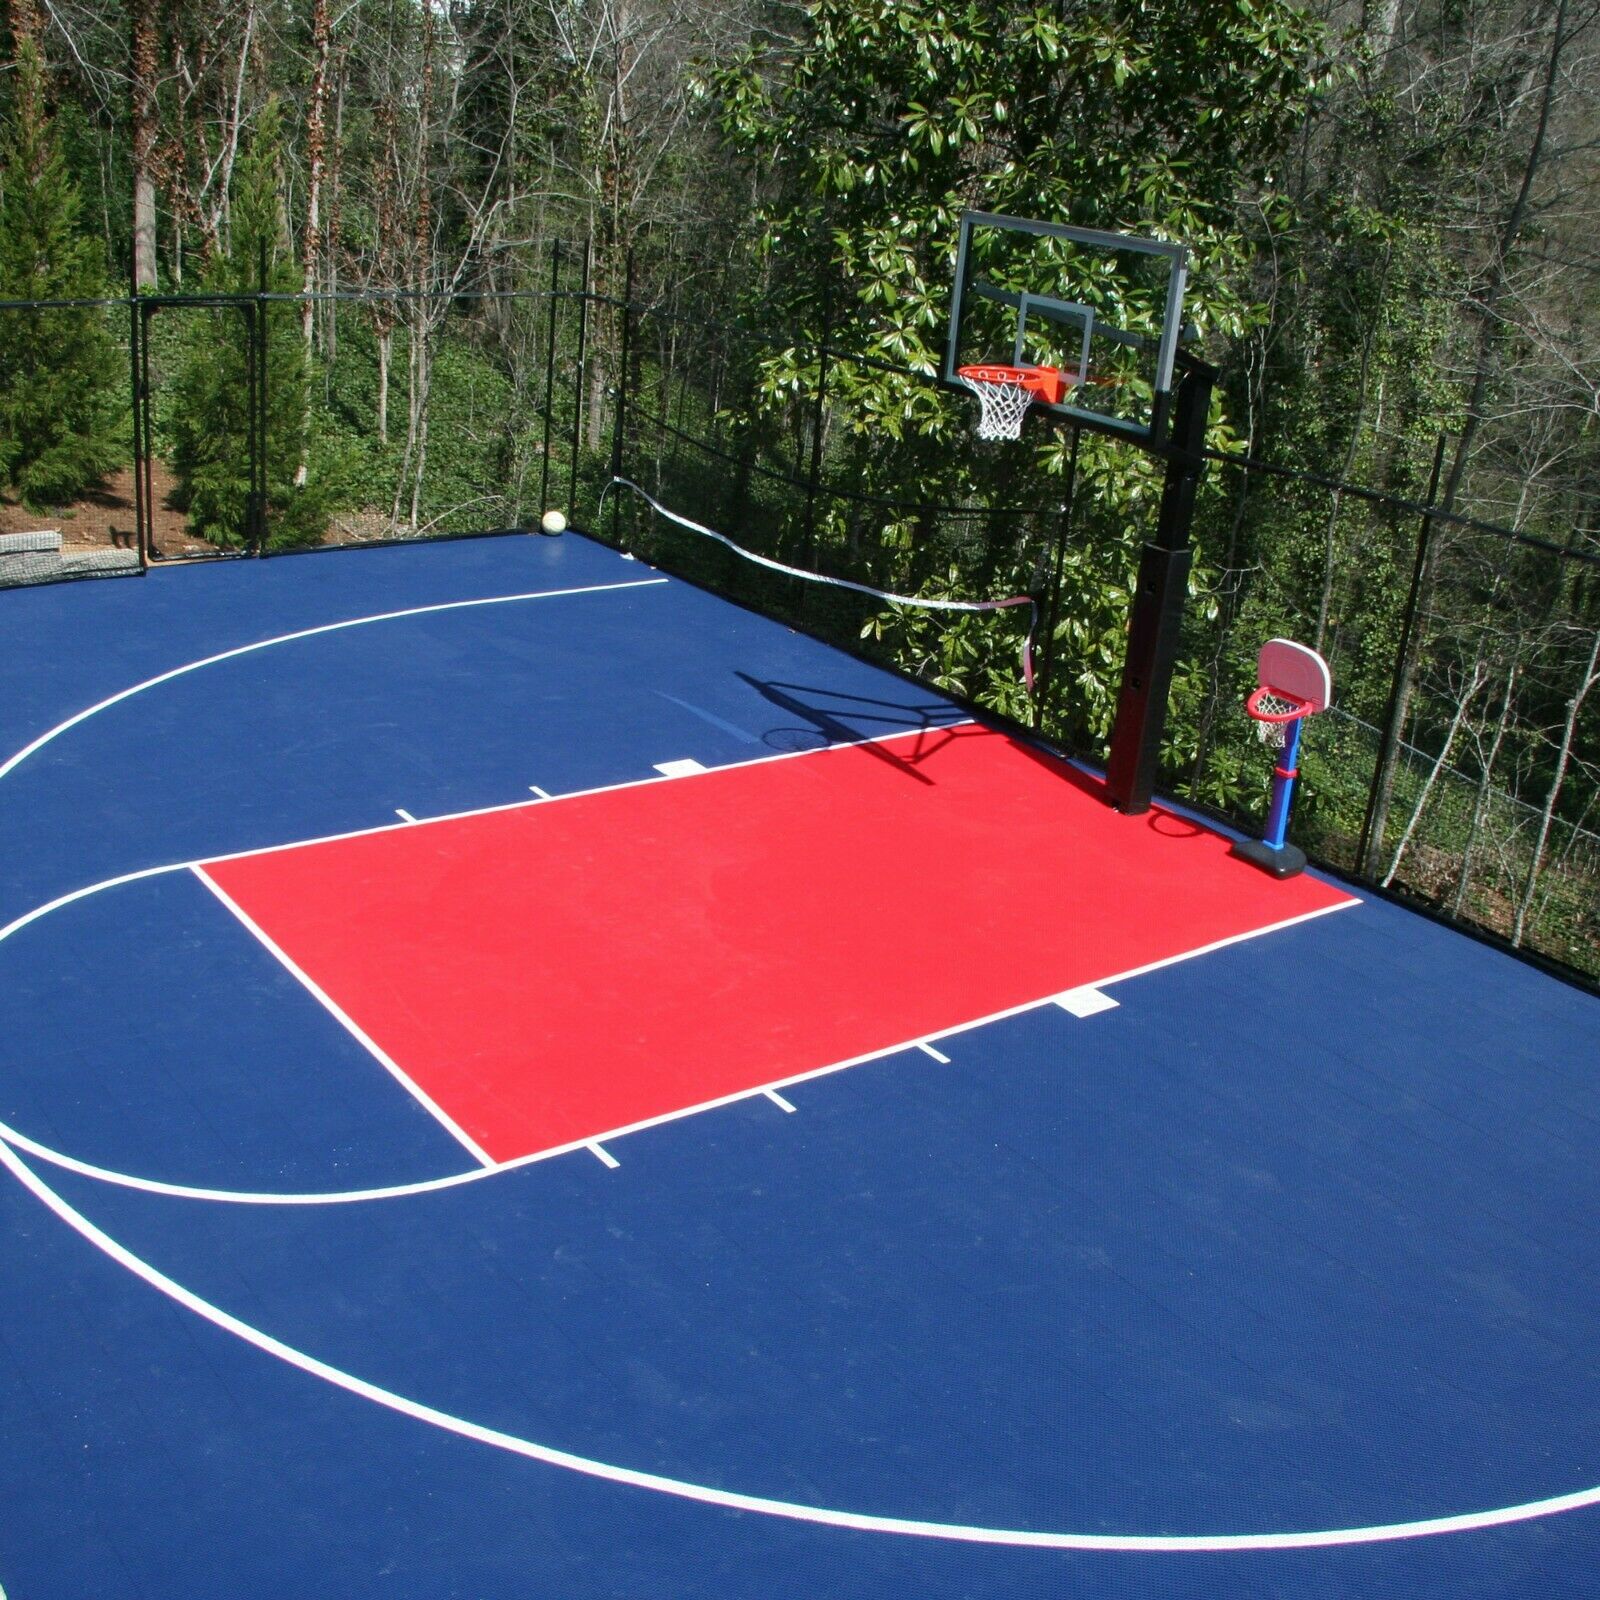 Flooringinc Outdoor Court Tiles, 1'x1' Basketball Volleyball Soccer Tennis